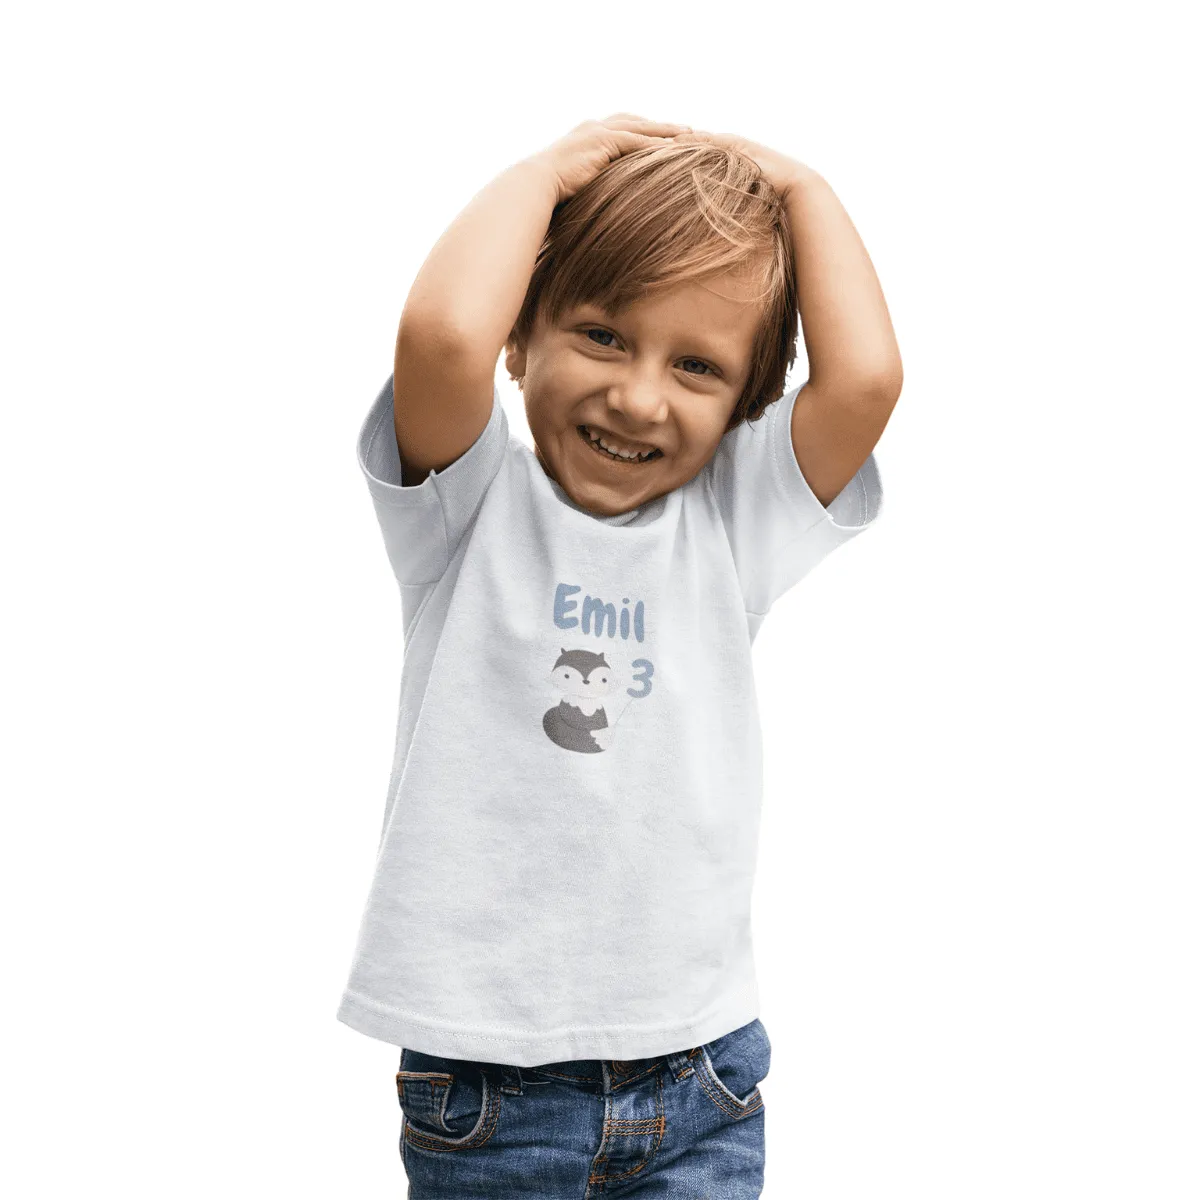 Kinder T-Shirt 3. Geburtstag mit Wunschname und Alter | Design Fuchs| Baumwolle - Fair Trade | Kurzarm | Weiß